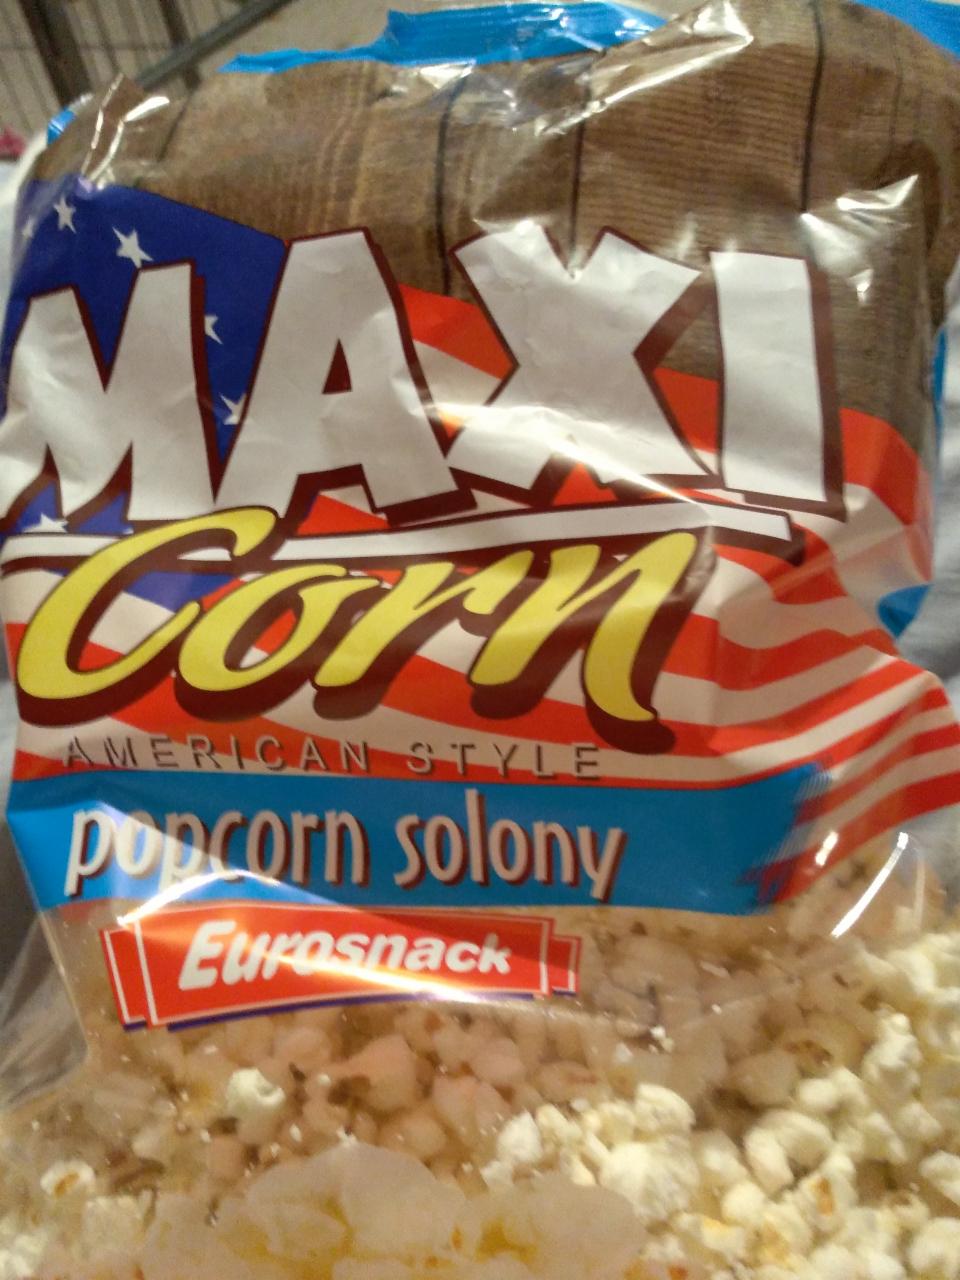 Zdjęcia - Popcorn solony Maxi Corn